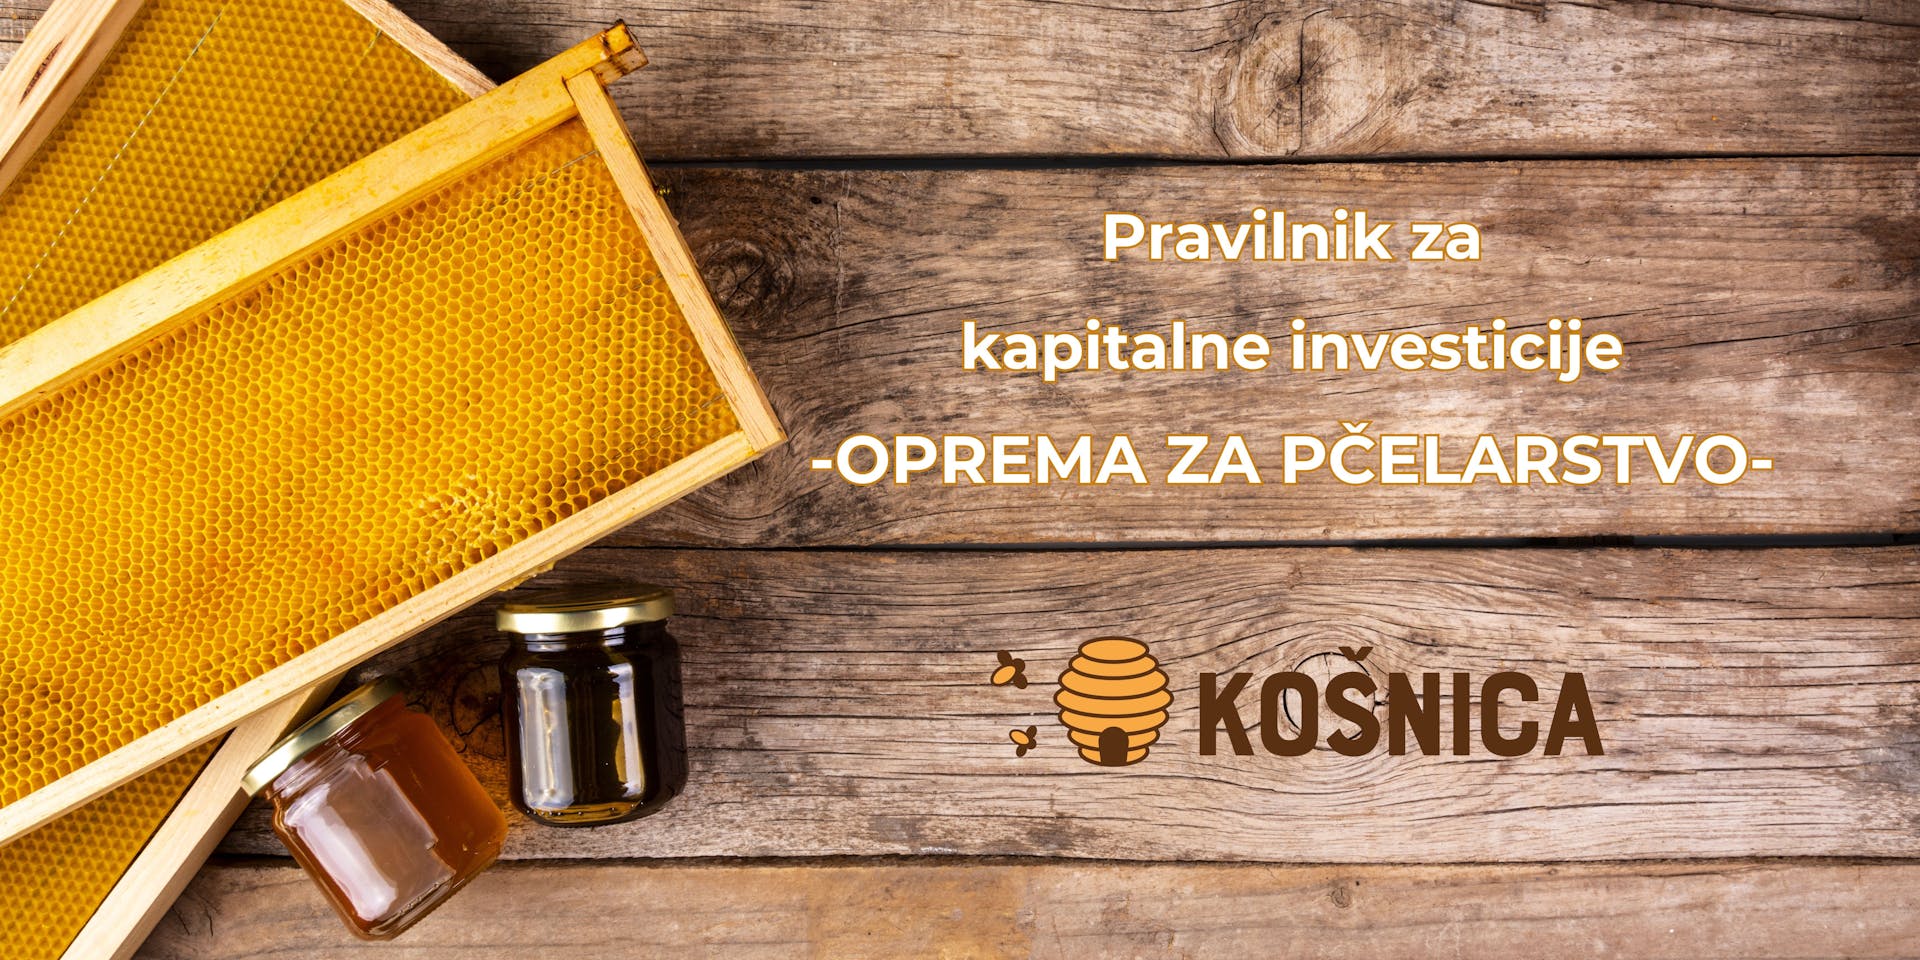 Cover Image for Pravilnik za kapitalne investicije–prečišćen tekst